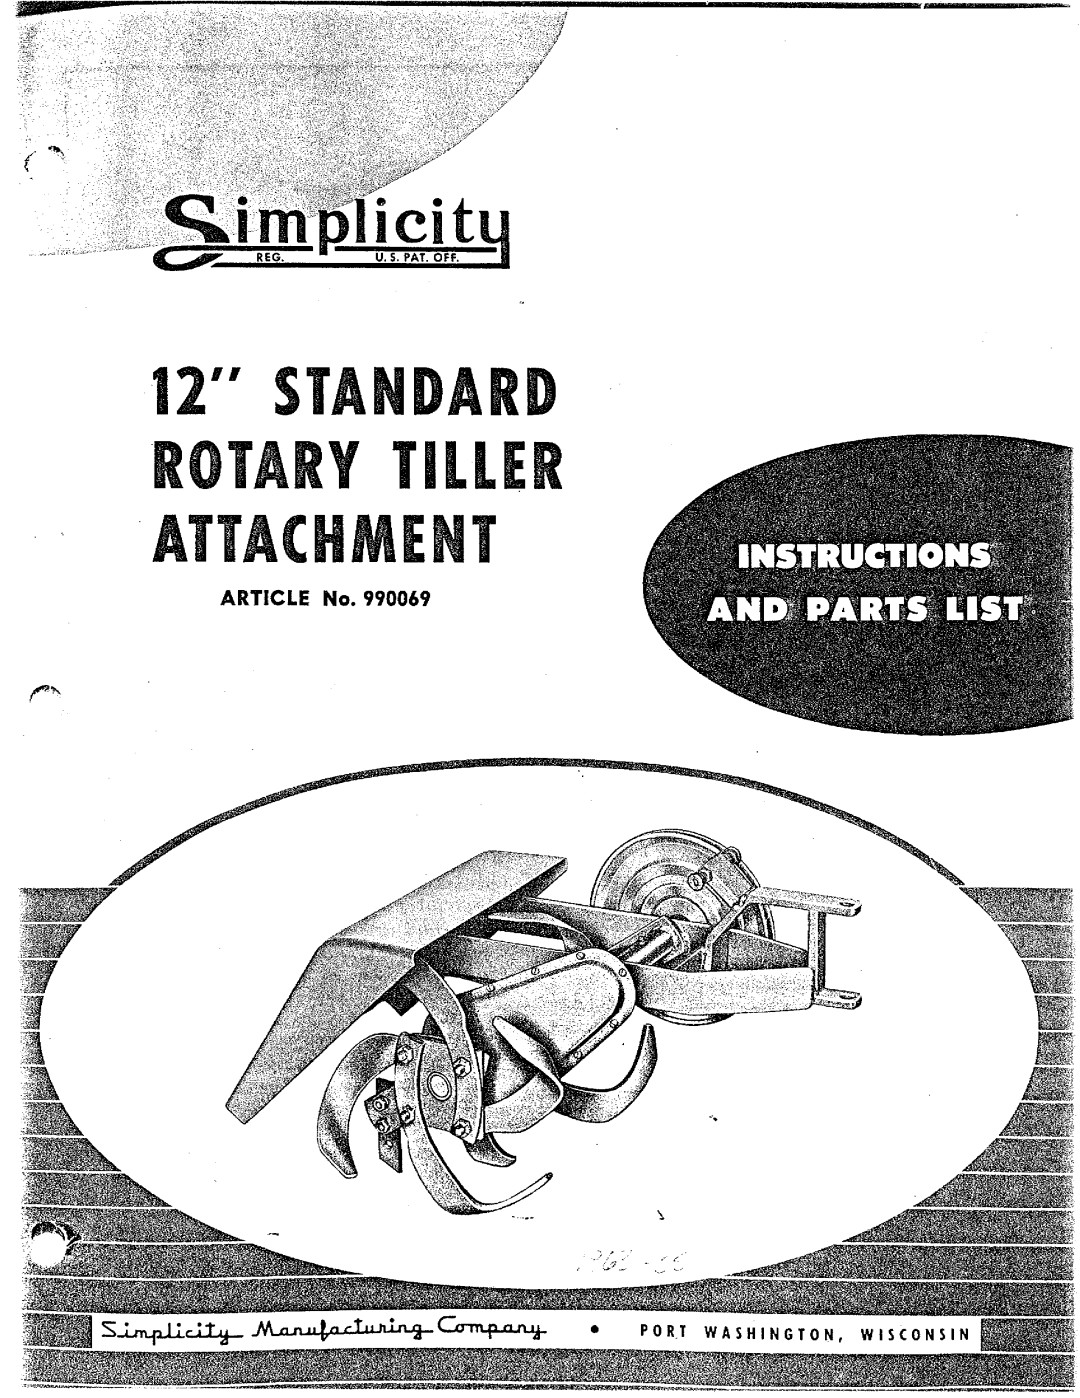 Simplicity 990069 manual 